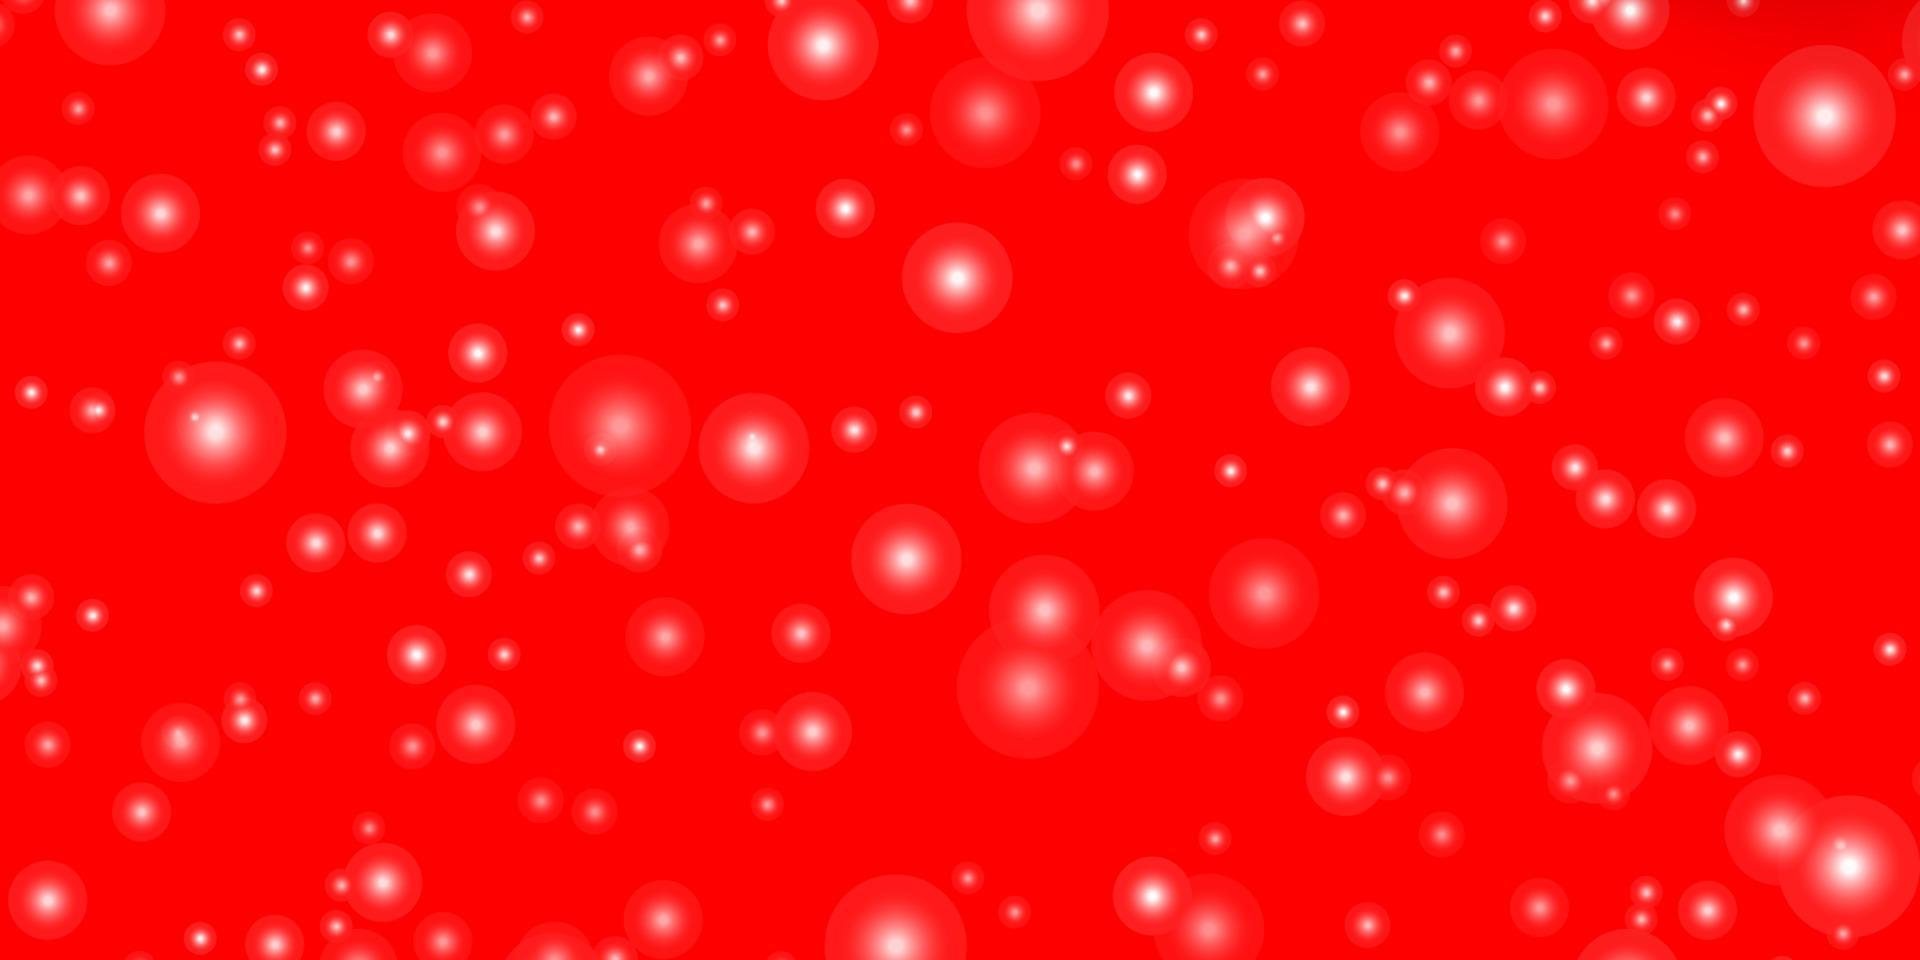 fond de vecteur rouge clair avec des étoiles colorées.